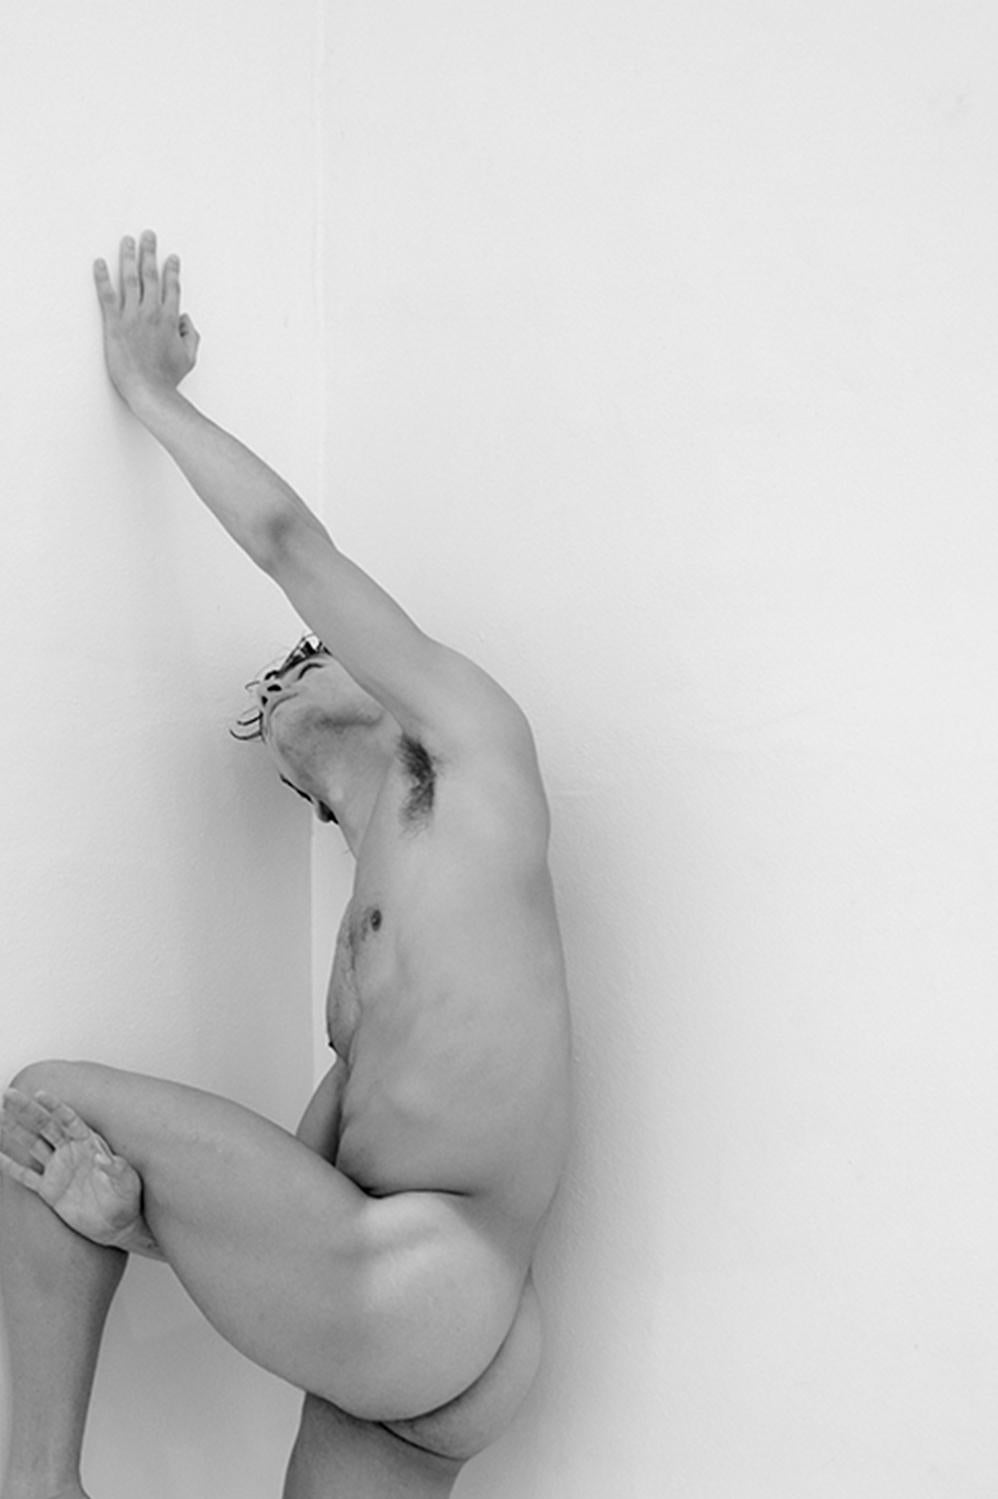 Homme contre le mur Deux par Ricky Cohete 
De la série Motion
Photographie en noir et blanc
Impression au pigment d'archivage
Moyen 36 